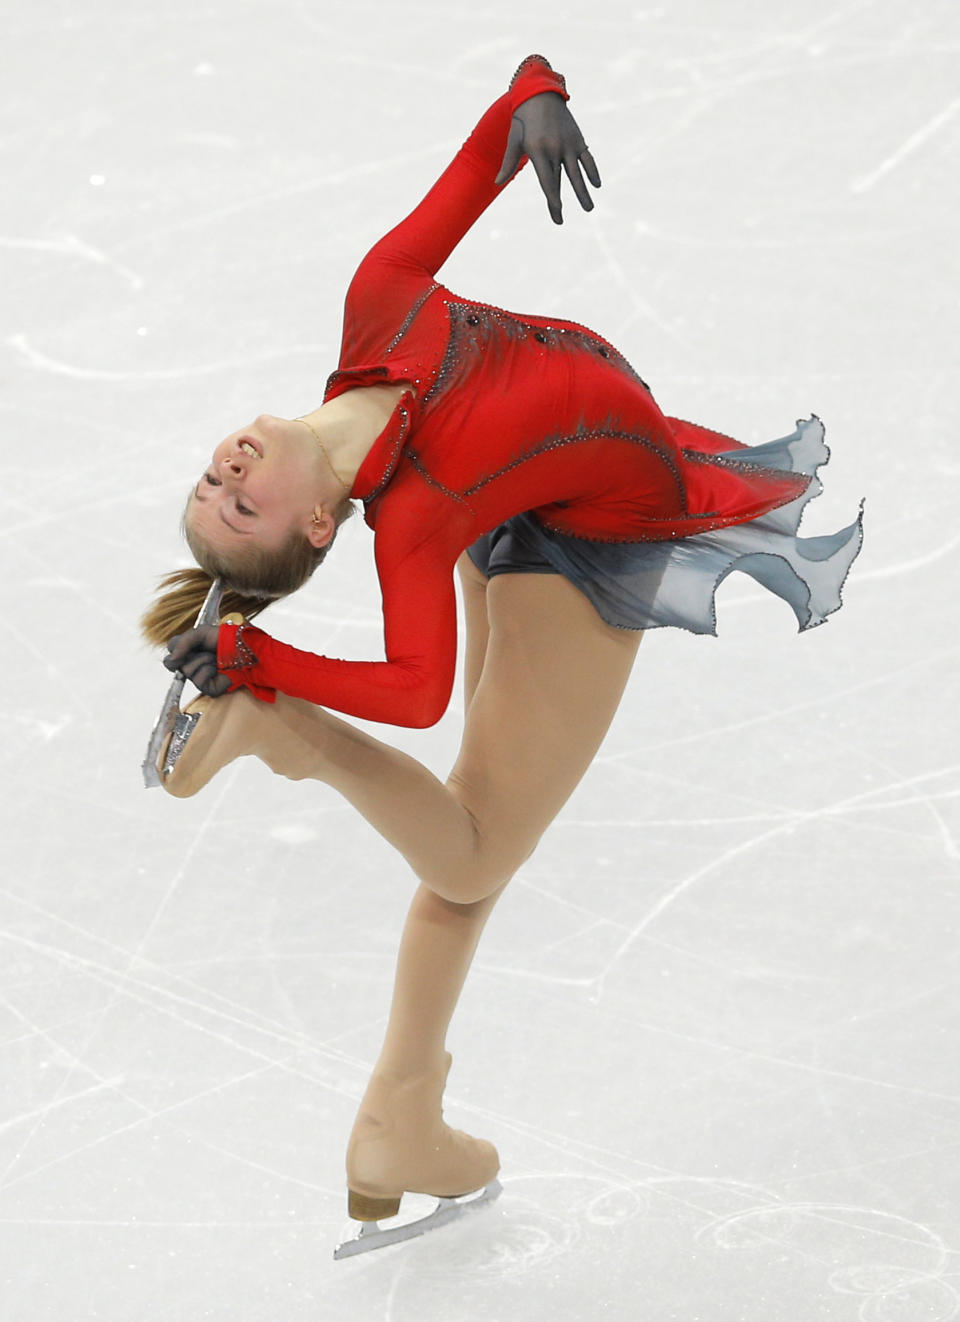 La rusa Julia Lipnitskaia compite en la prueba de equipos del patinaje artístico de los Juegos Olímpicos de Invierno, el 9 de febrero de 2014, en Sochi, Rusia. (AP Photo/Vadim Ghirda)